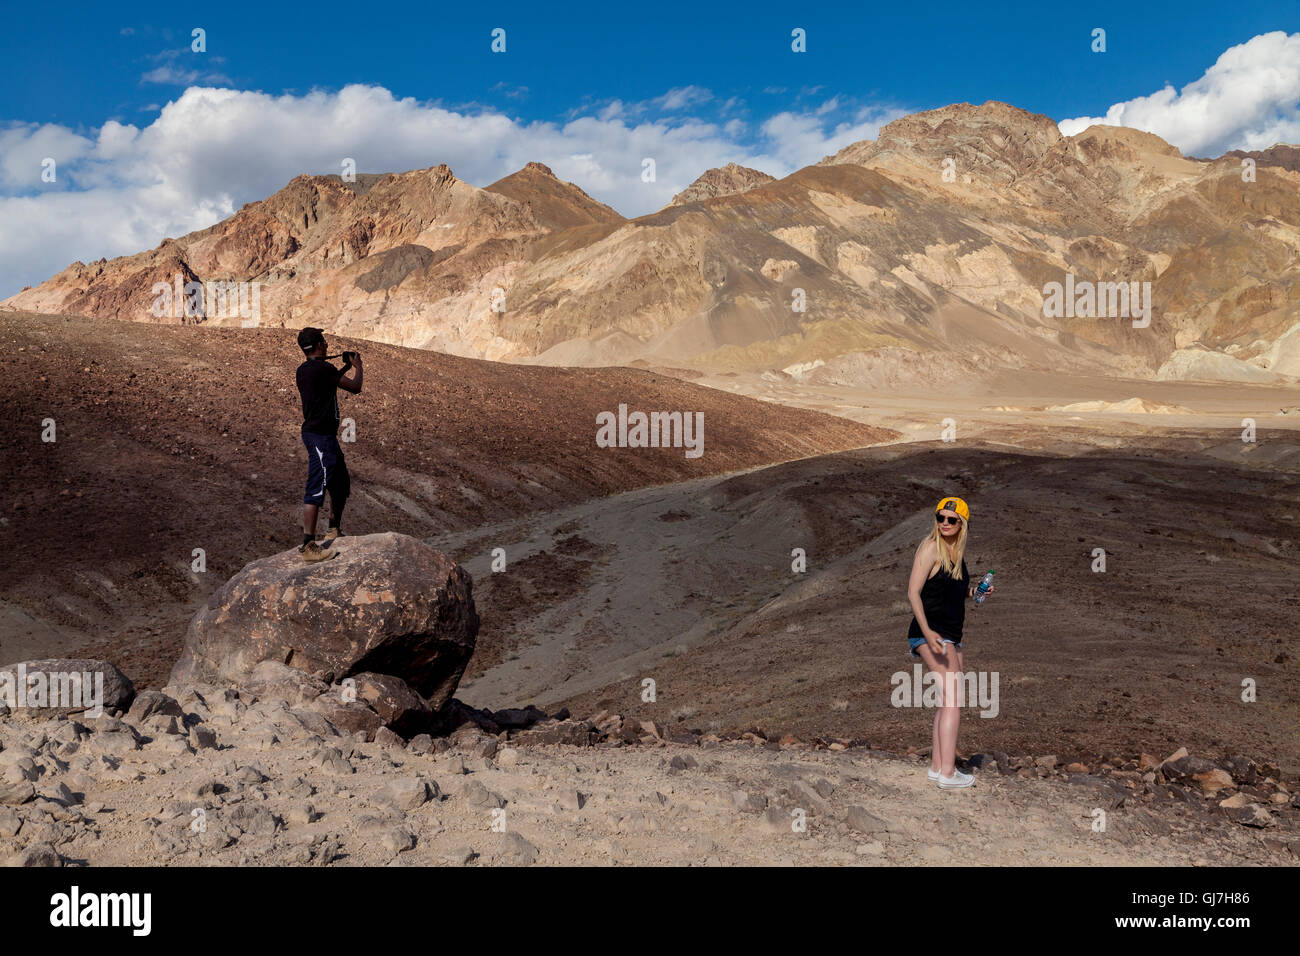 Maschio nero turistica prendendo immagini a vulcaniche e rocce sedimentarie sulle colline vicino a artista della tavolozza, donna caucasica guardando, Deat Foto Stock